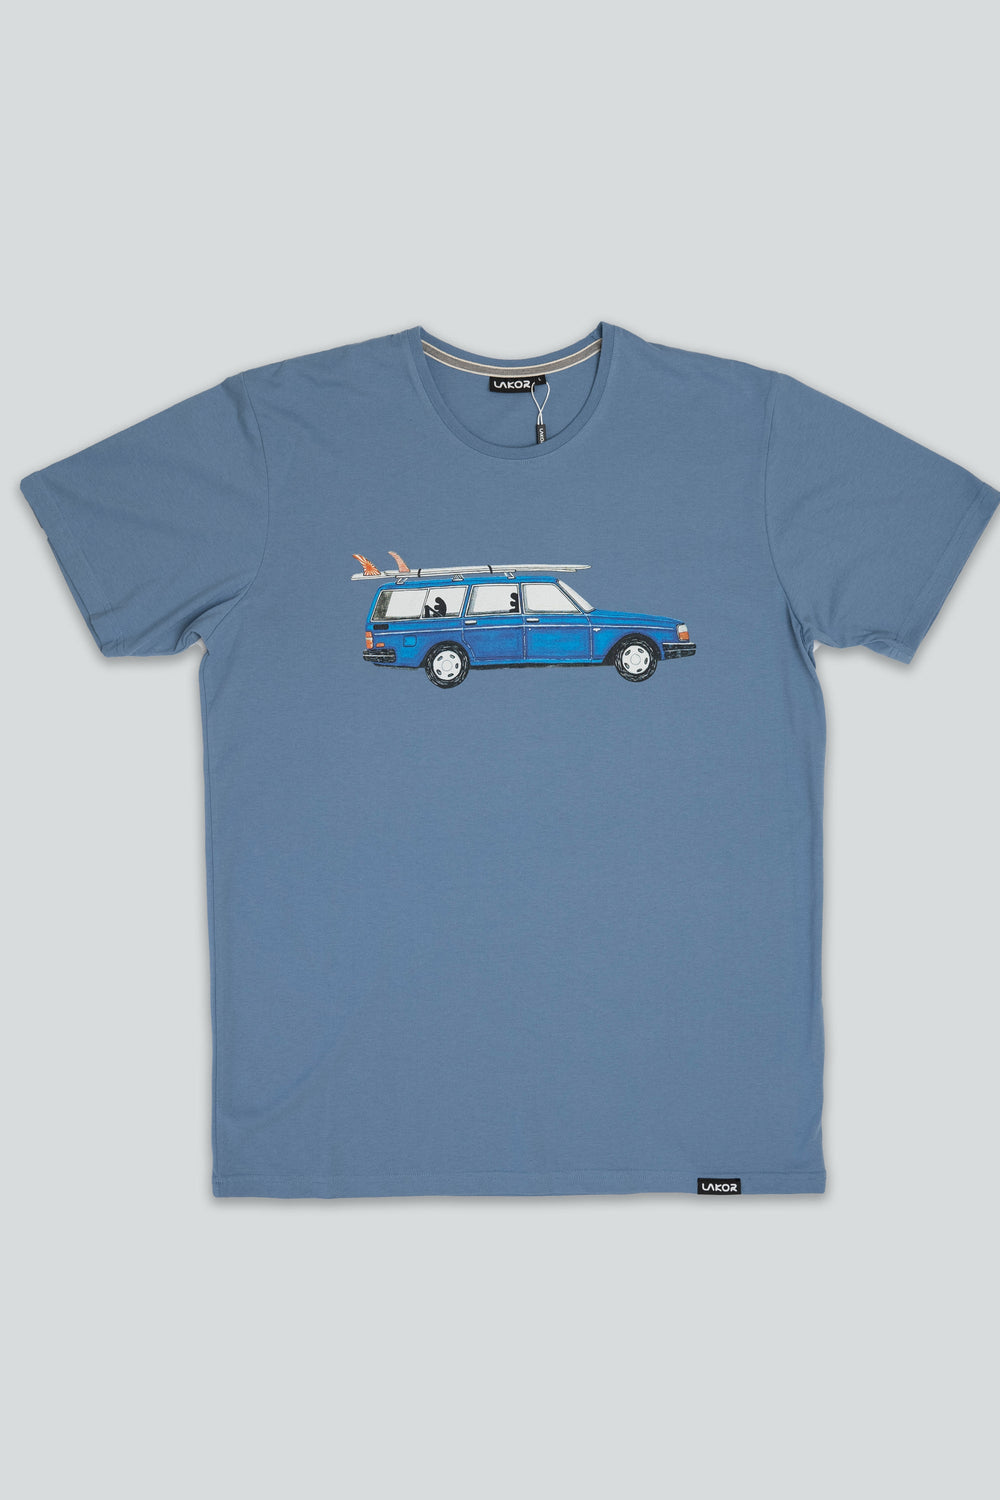 Lakor Soulwear Getaway Car T-Shirt